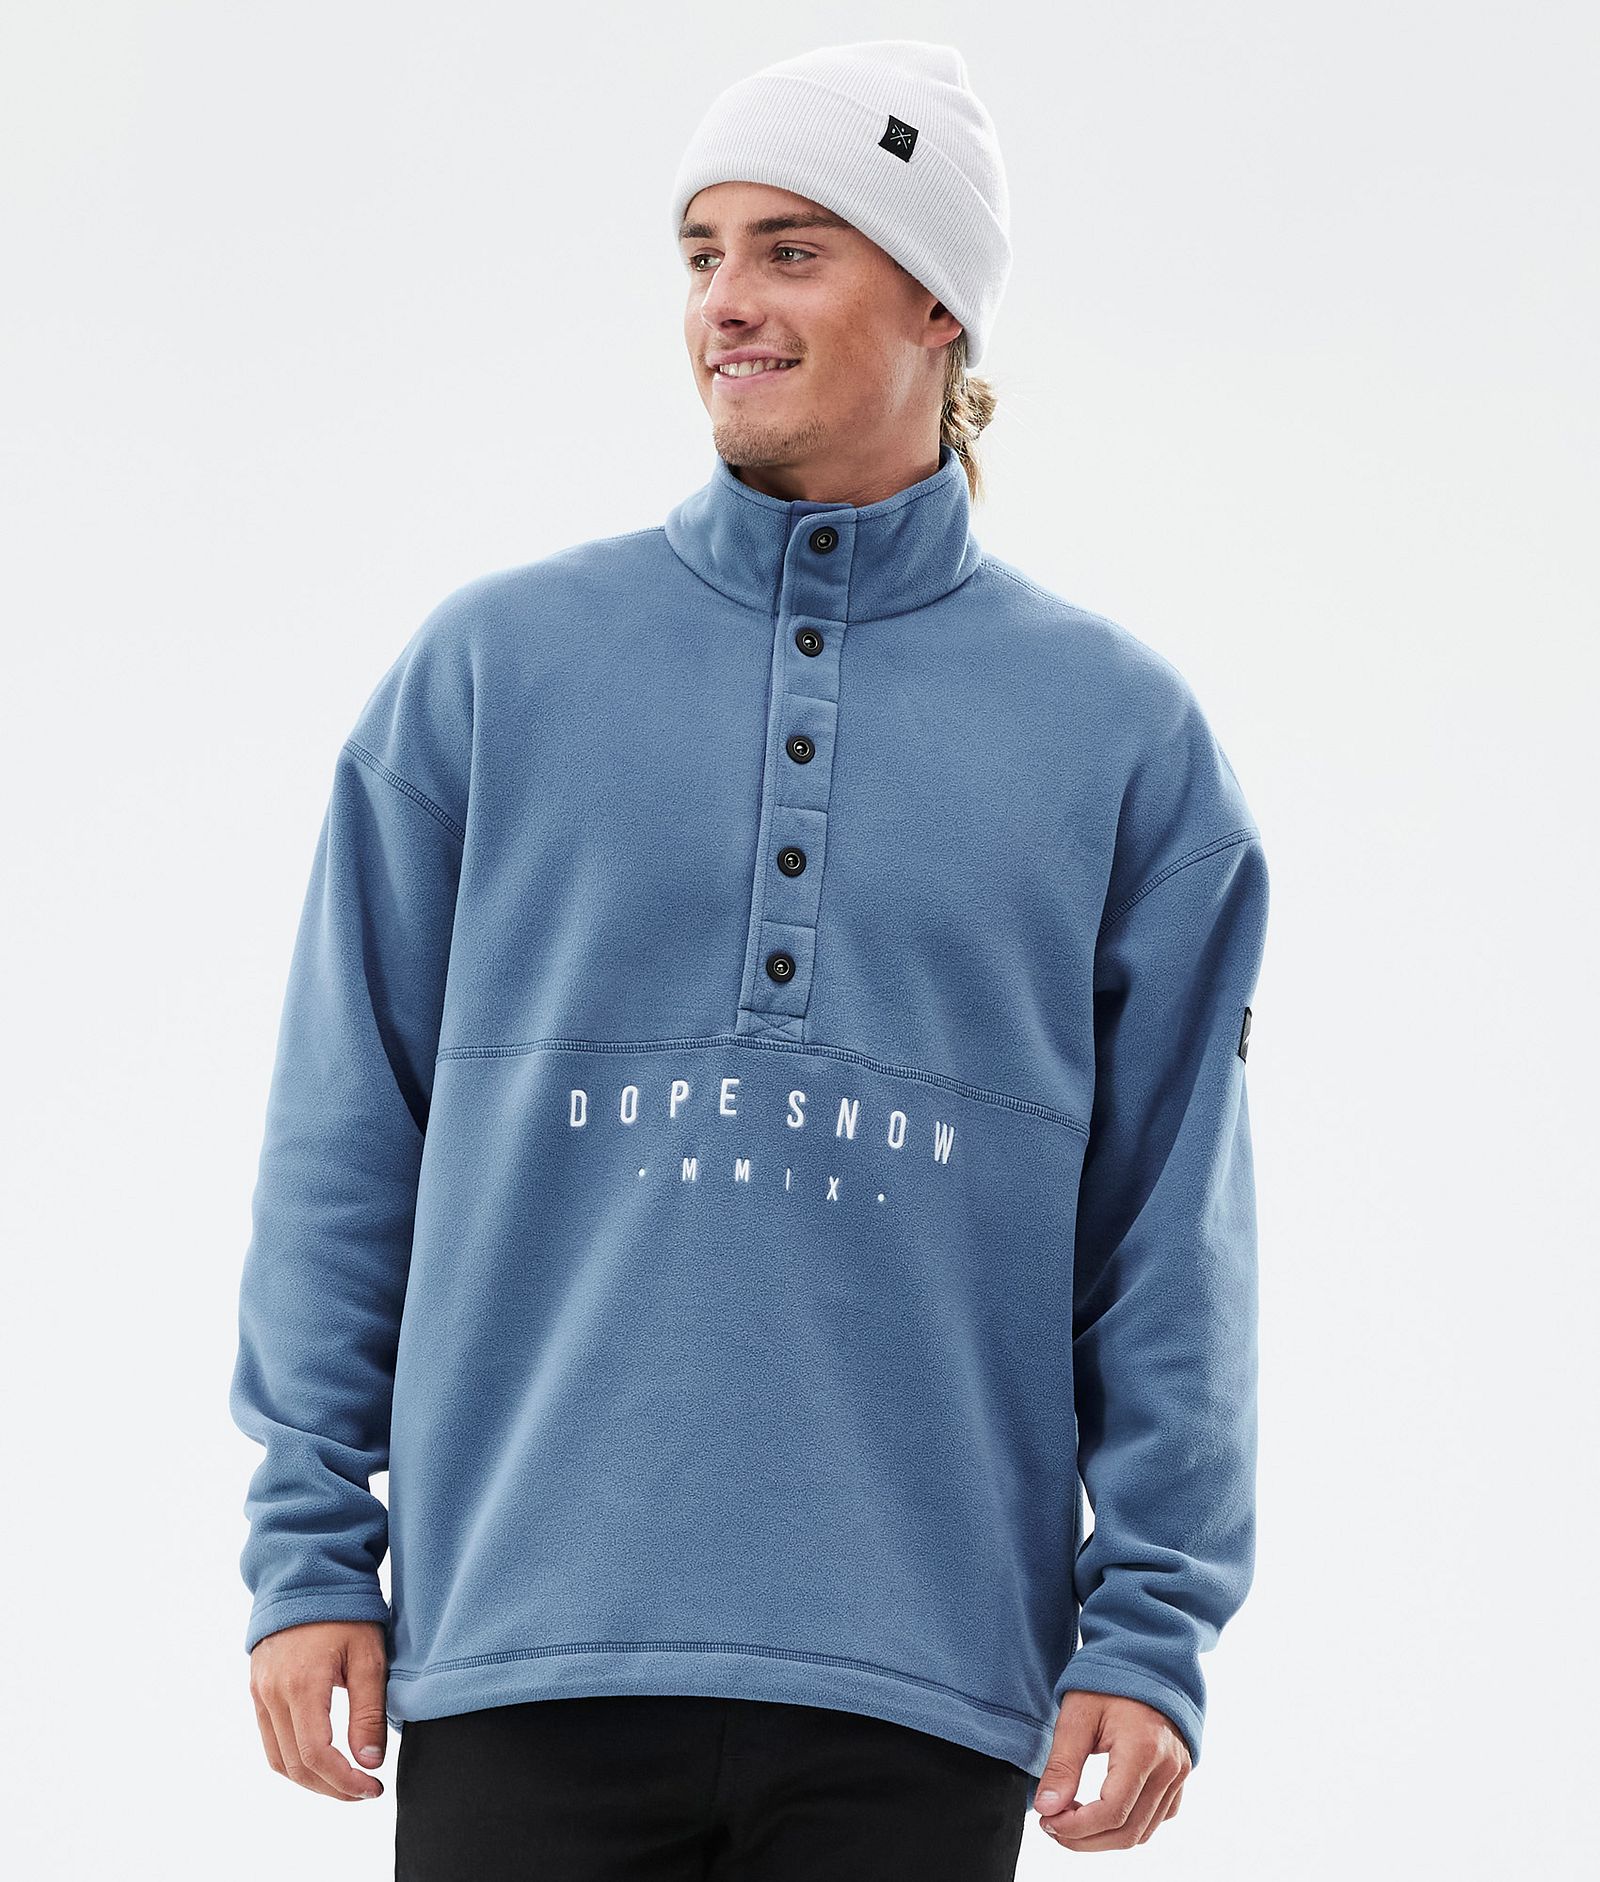 Comfy Fleece Sweater Men Blue Steel, Image 1 of 6